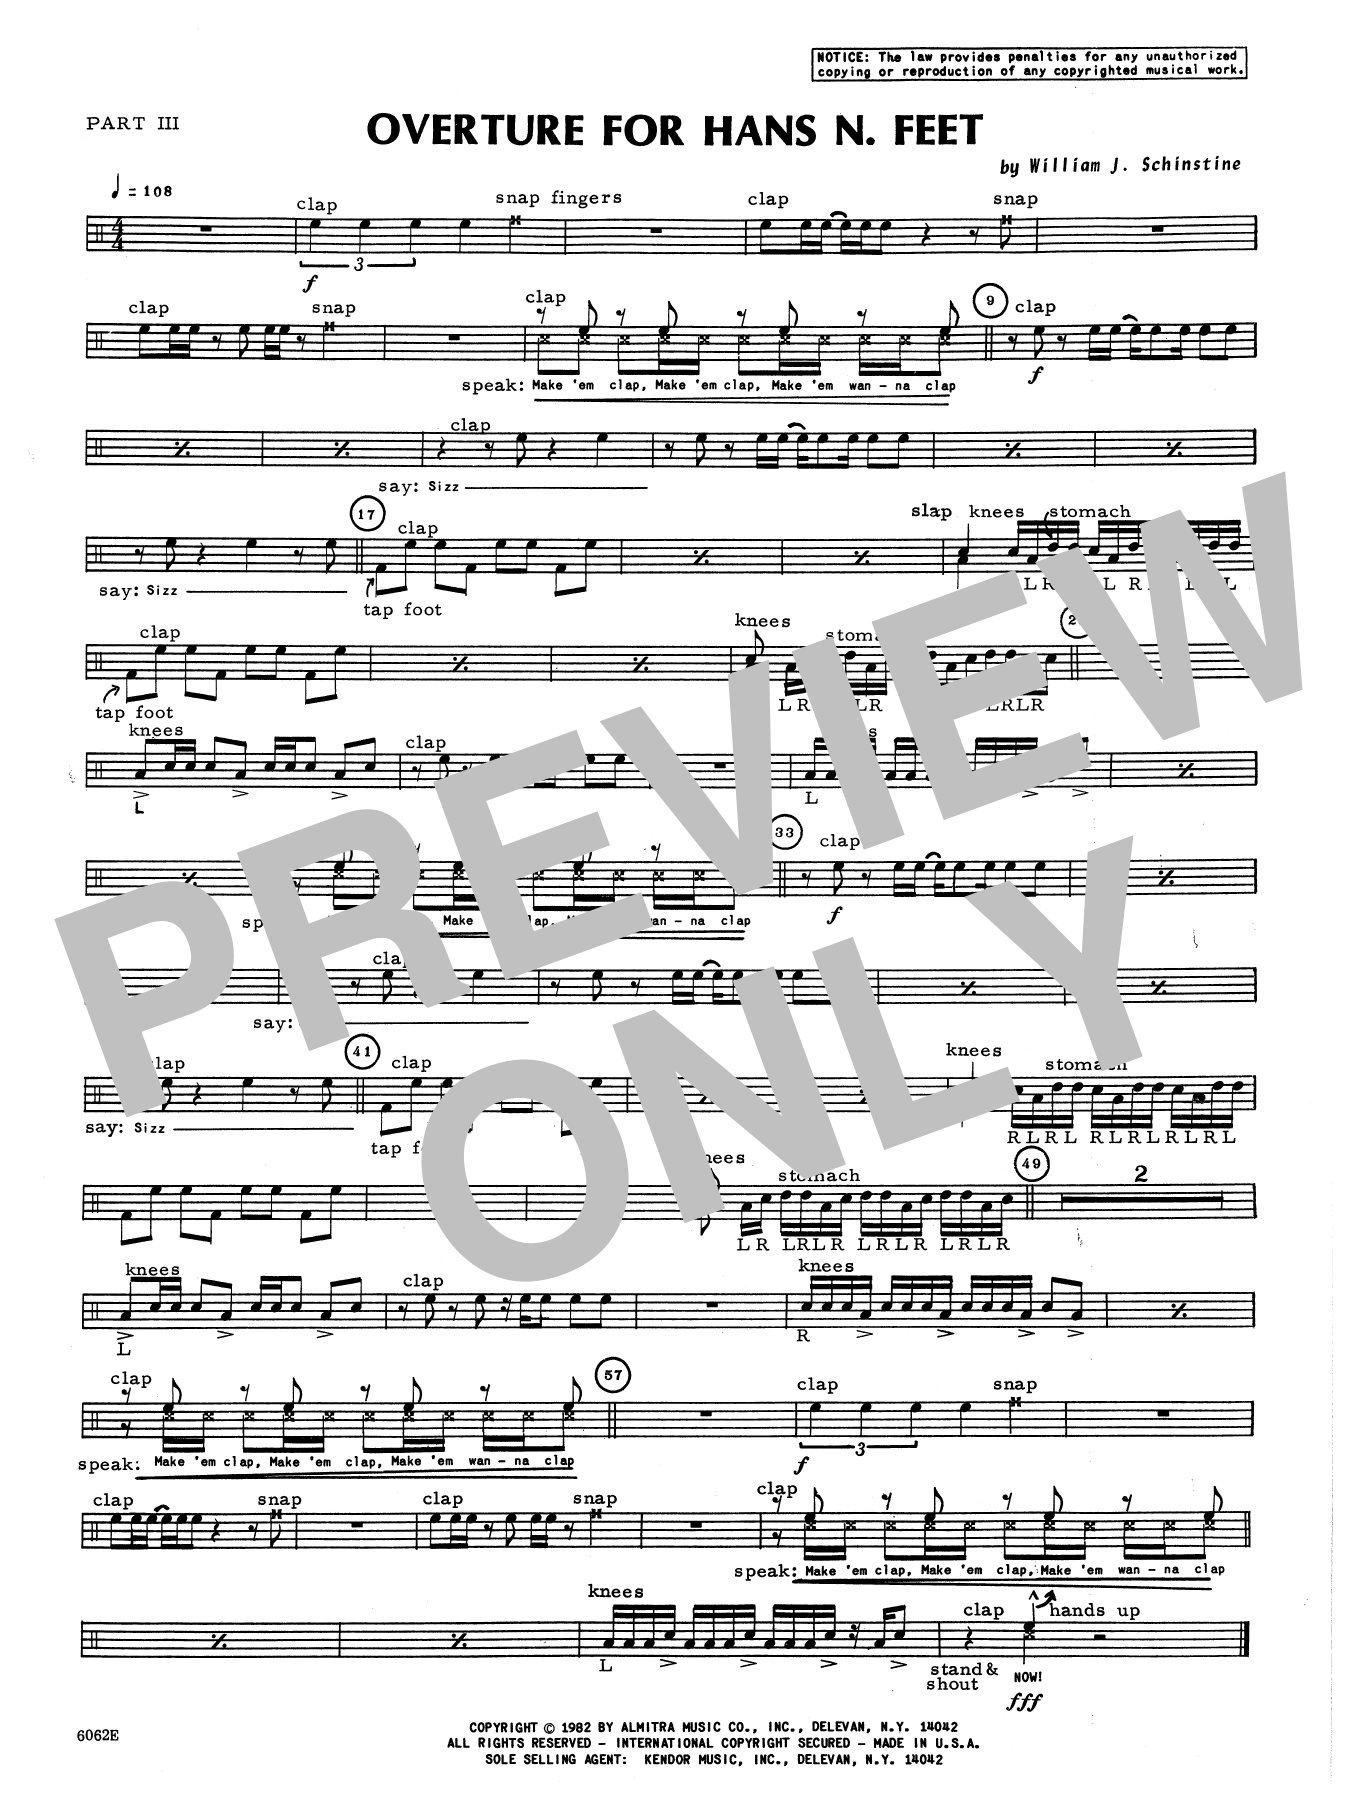 Download William Schinstine Overture For Hans N. Feet - Part 3 Sheet Music